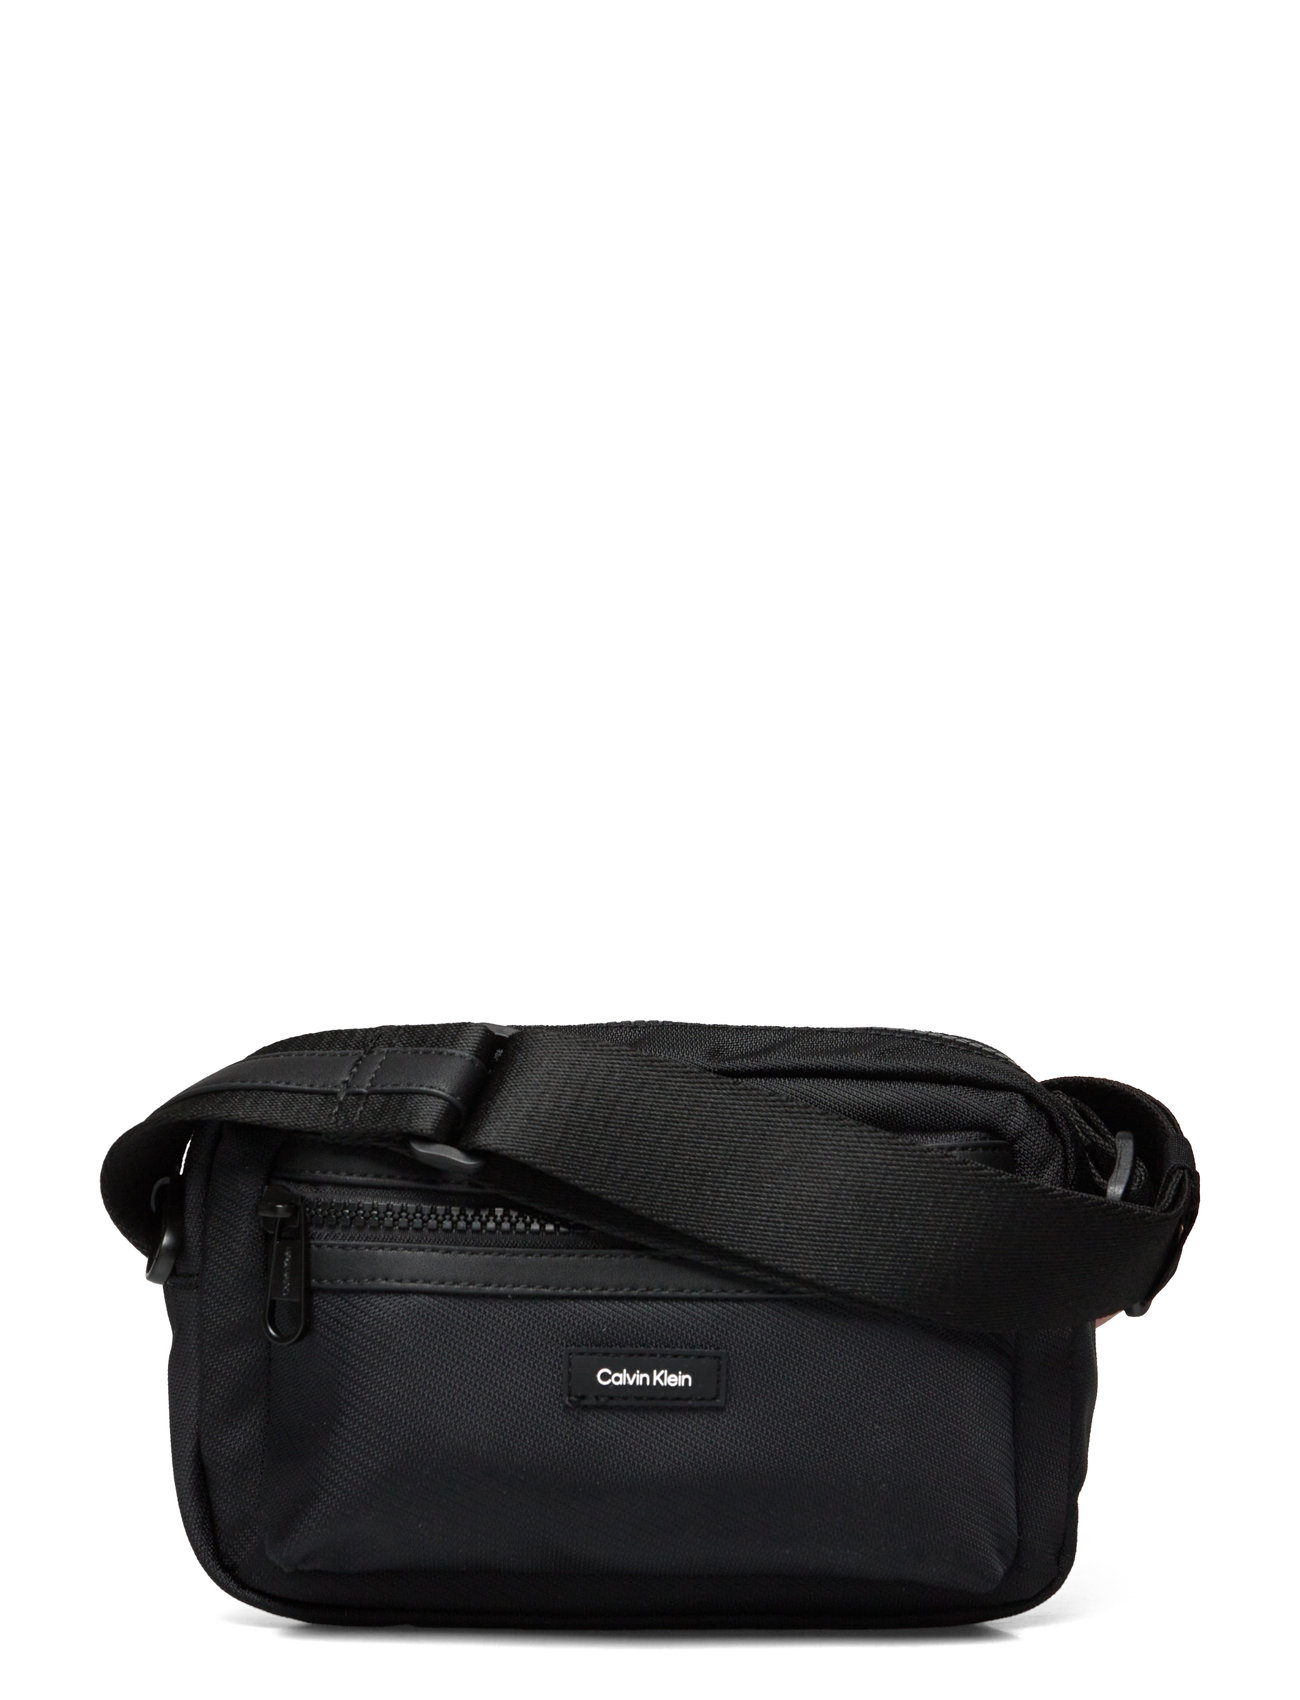 Ck Essential Camera Bag W/Pckt Skuldertaske Taske Black Calvin Klein